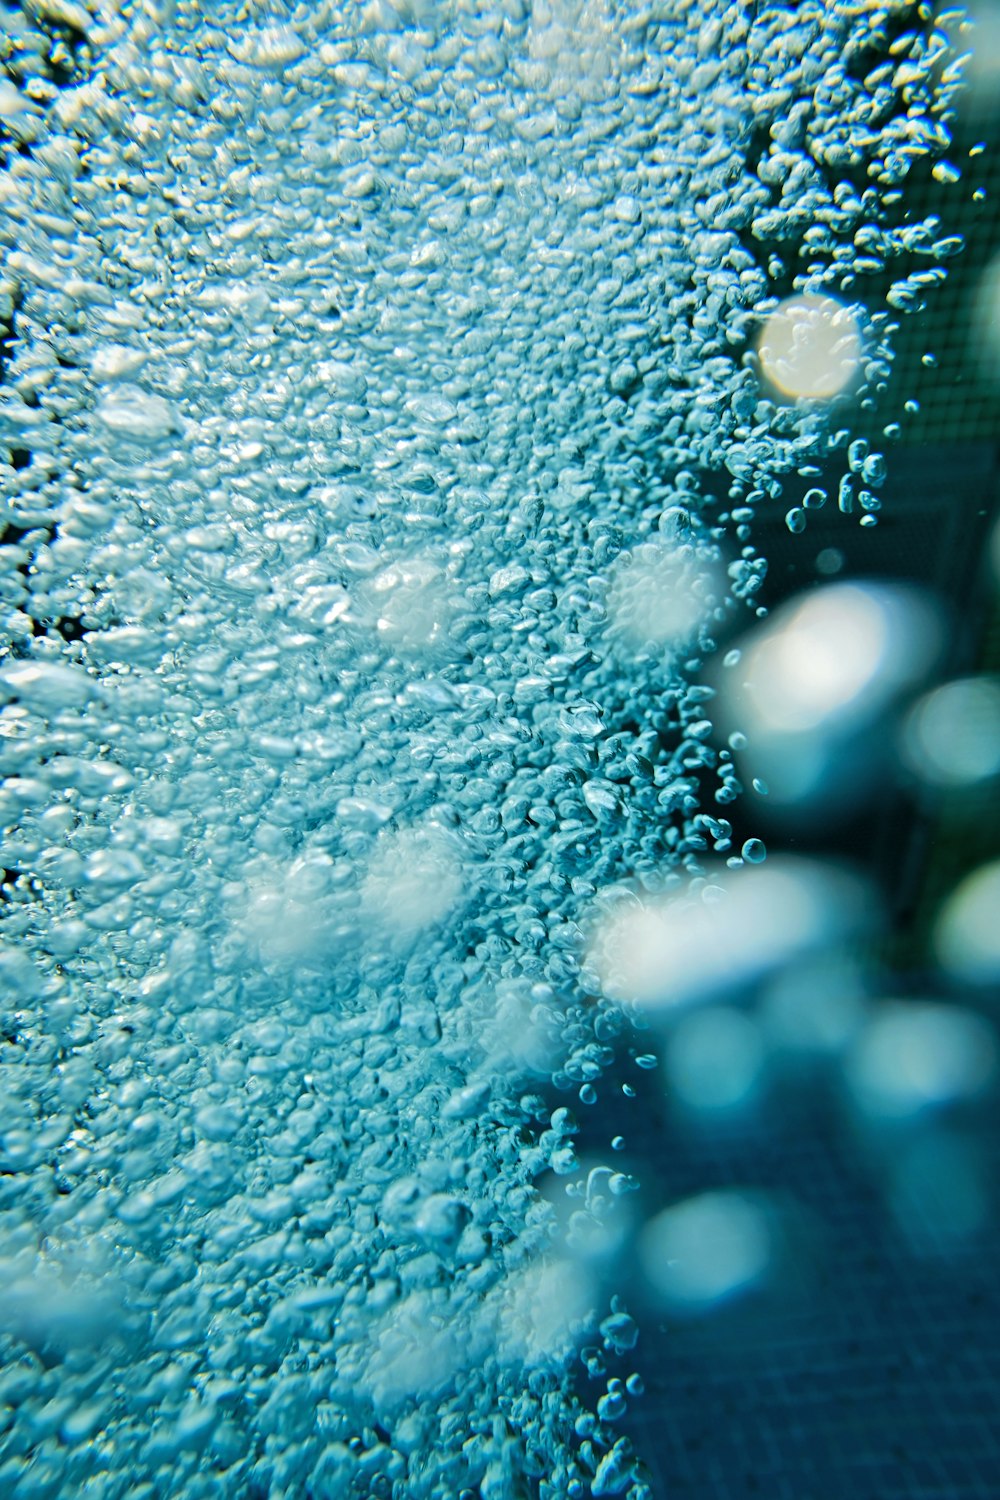 gotículas de água na superfície do vidro